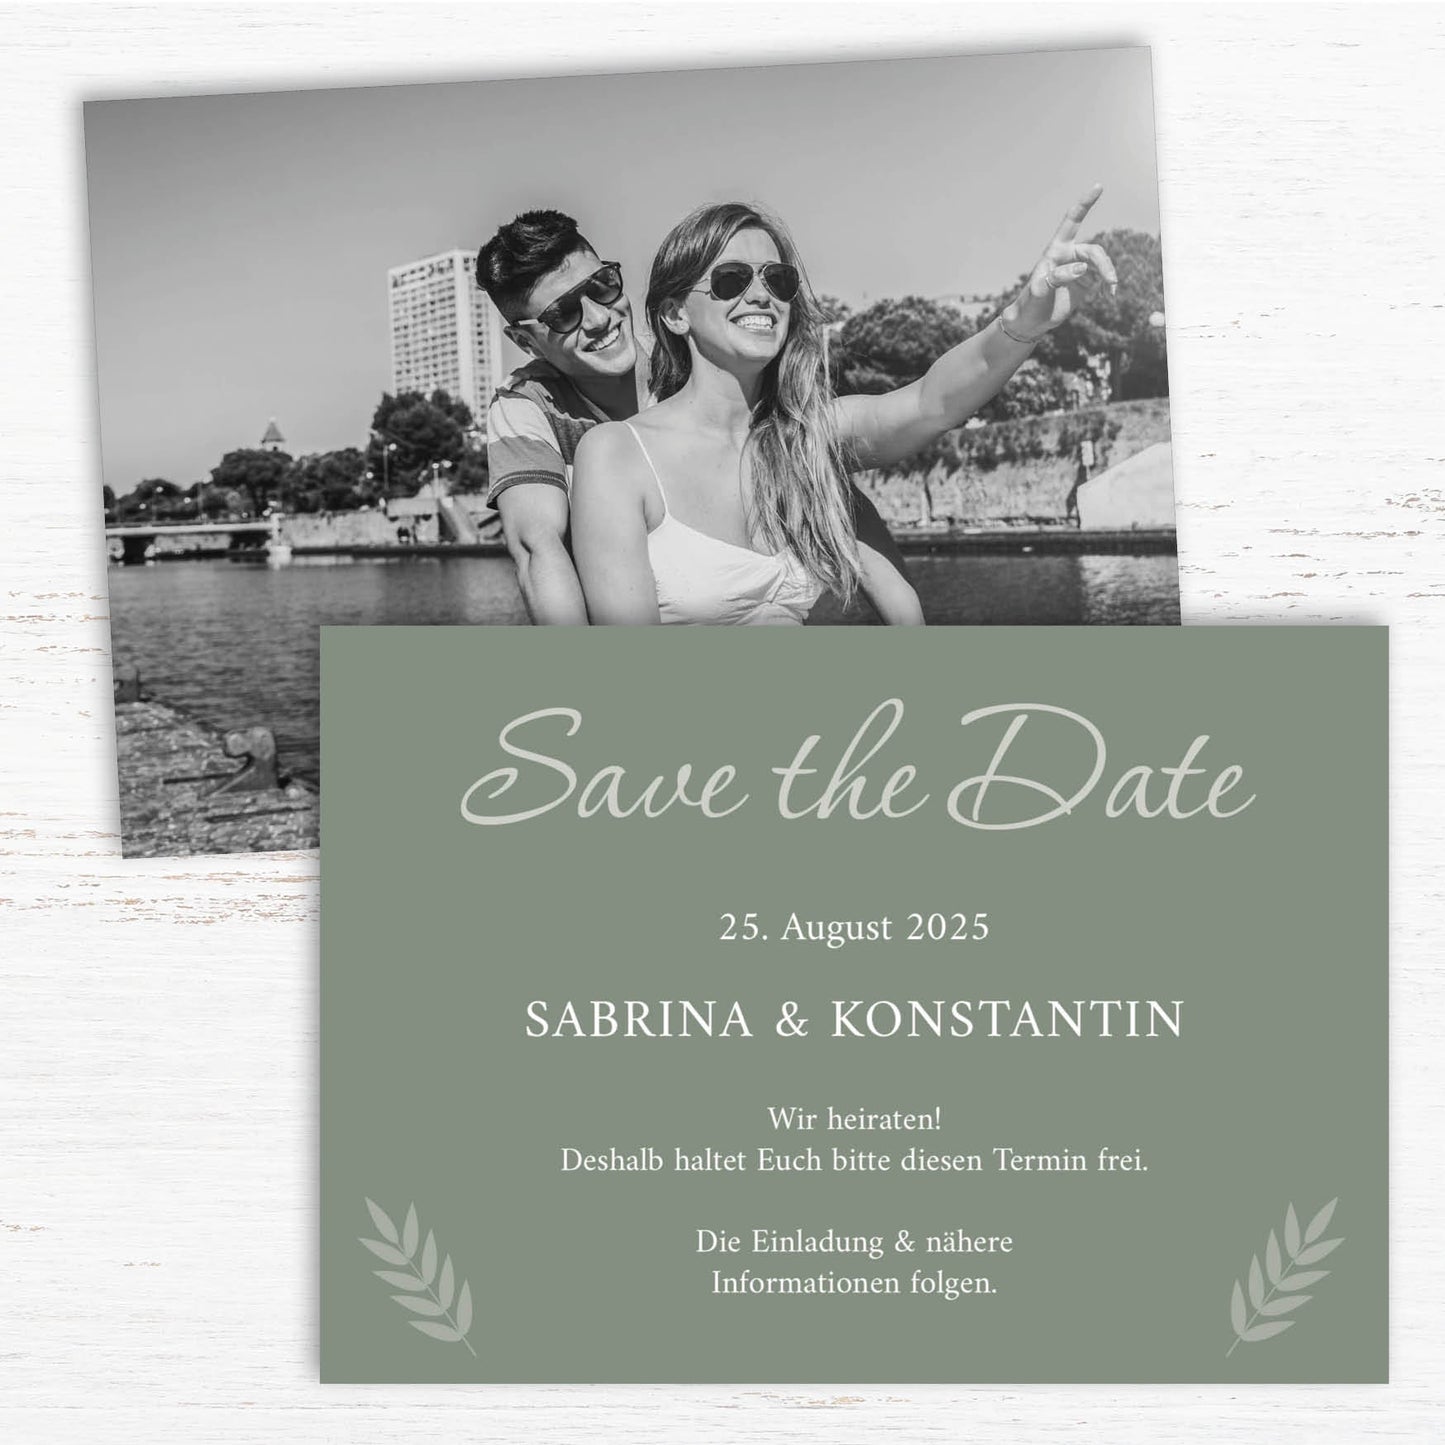 Save the Date Karten: Urlaubsfoto in Olive